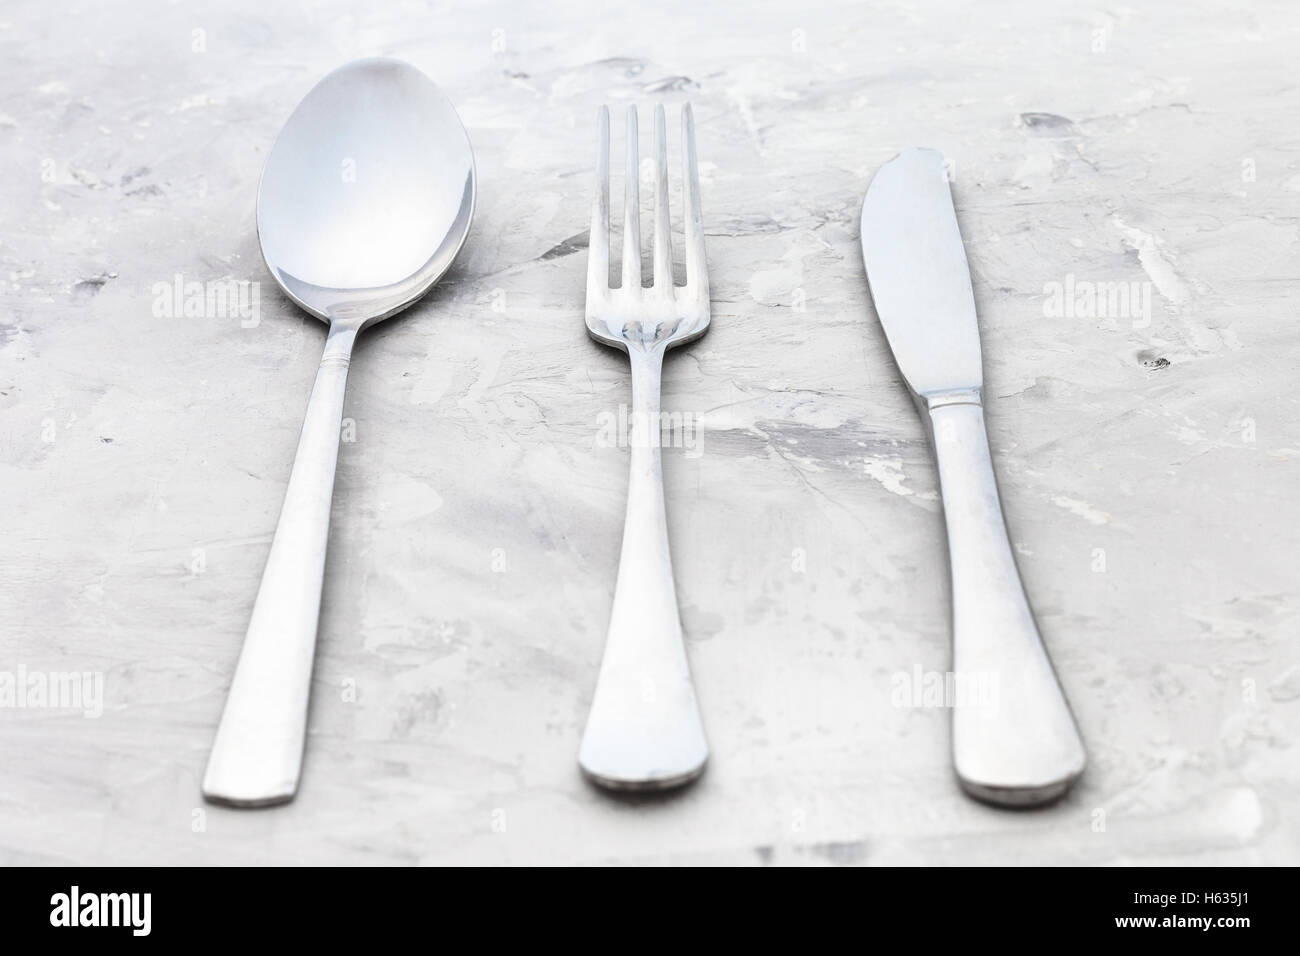 Concetto di cibo - servizio di set da tavola coltello, forchetta, cucchiaio Zuppa su una superficie in calcestruzzo Foto Stock